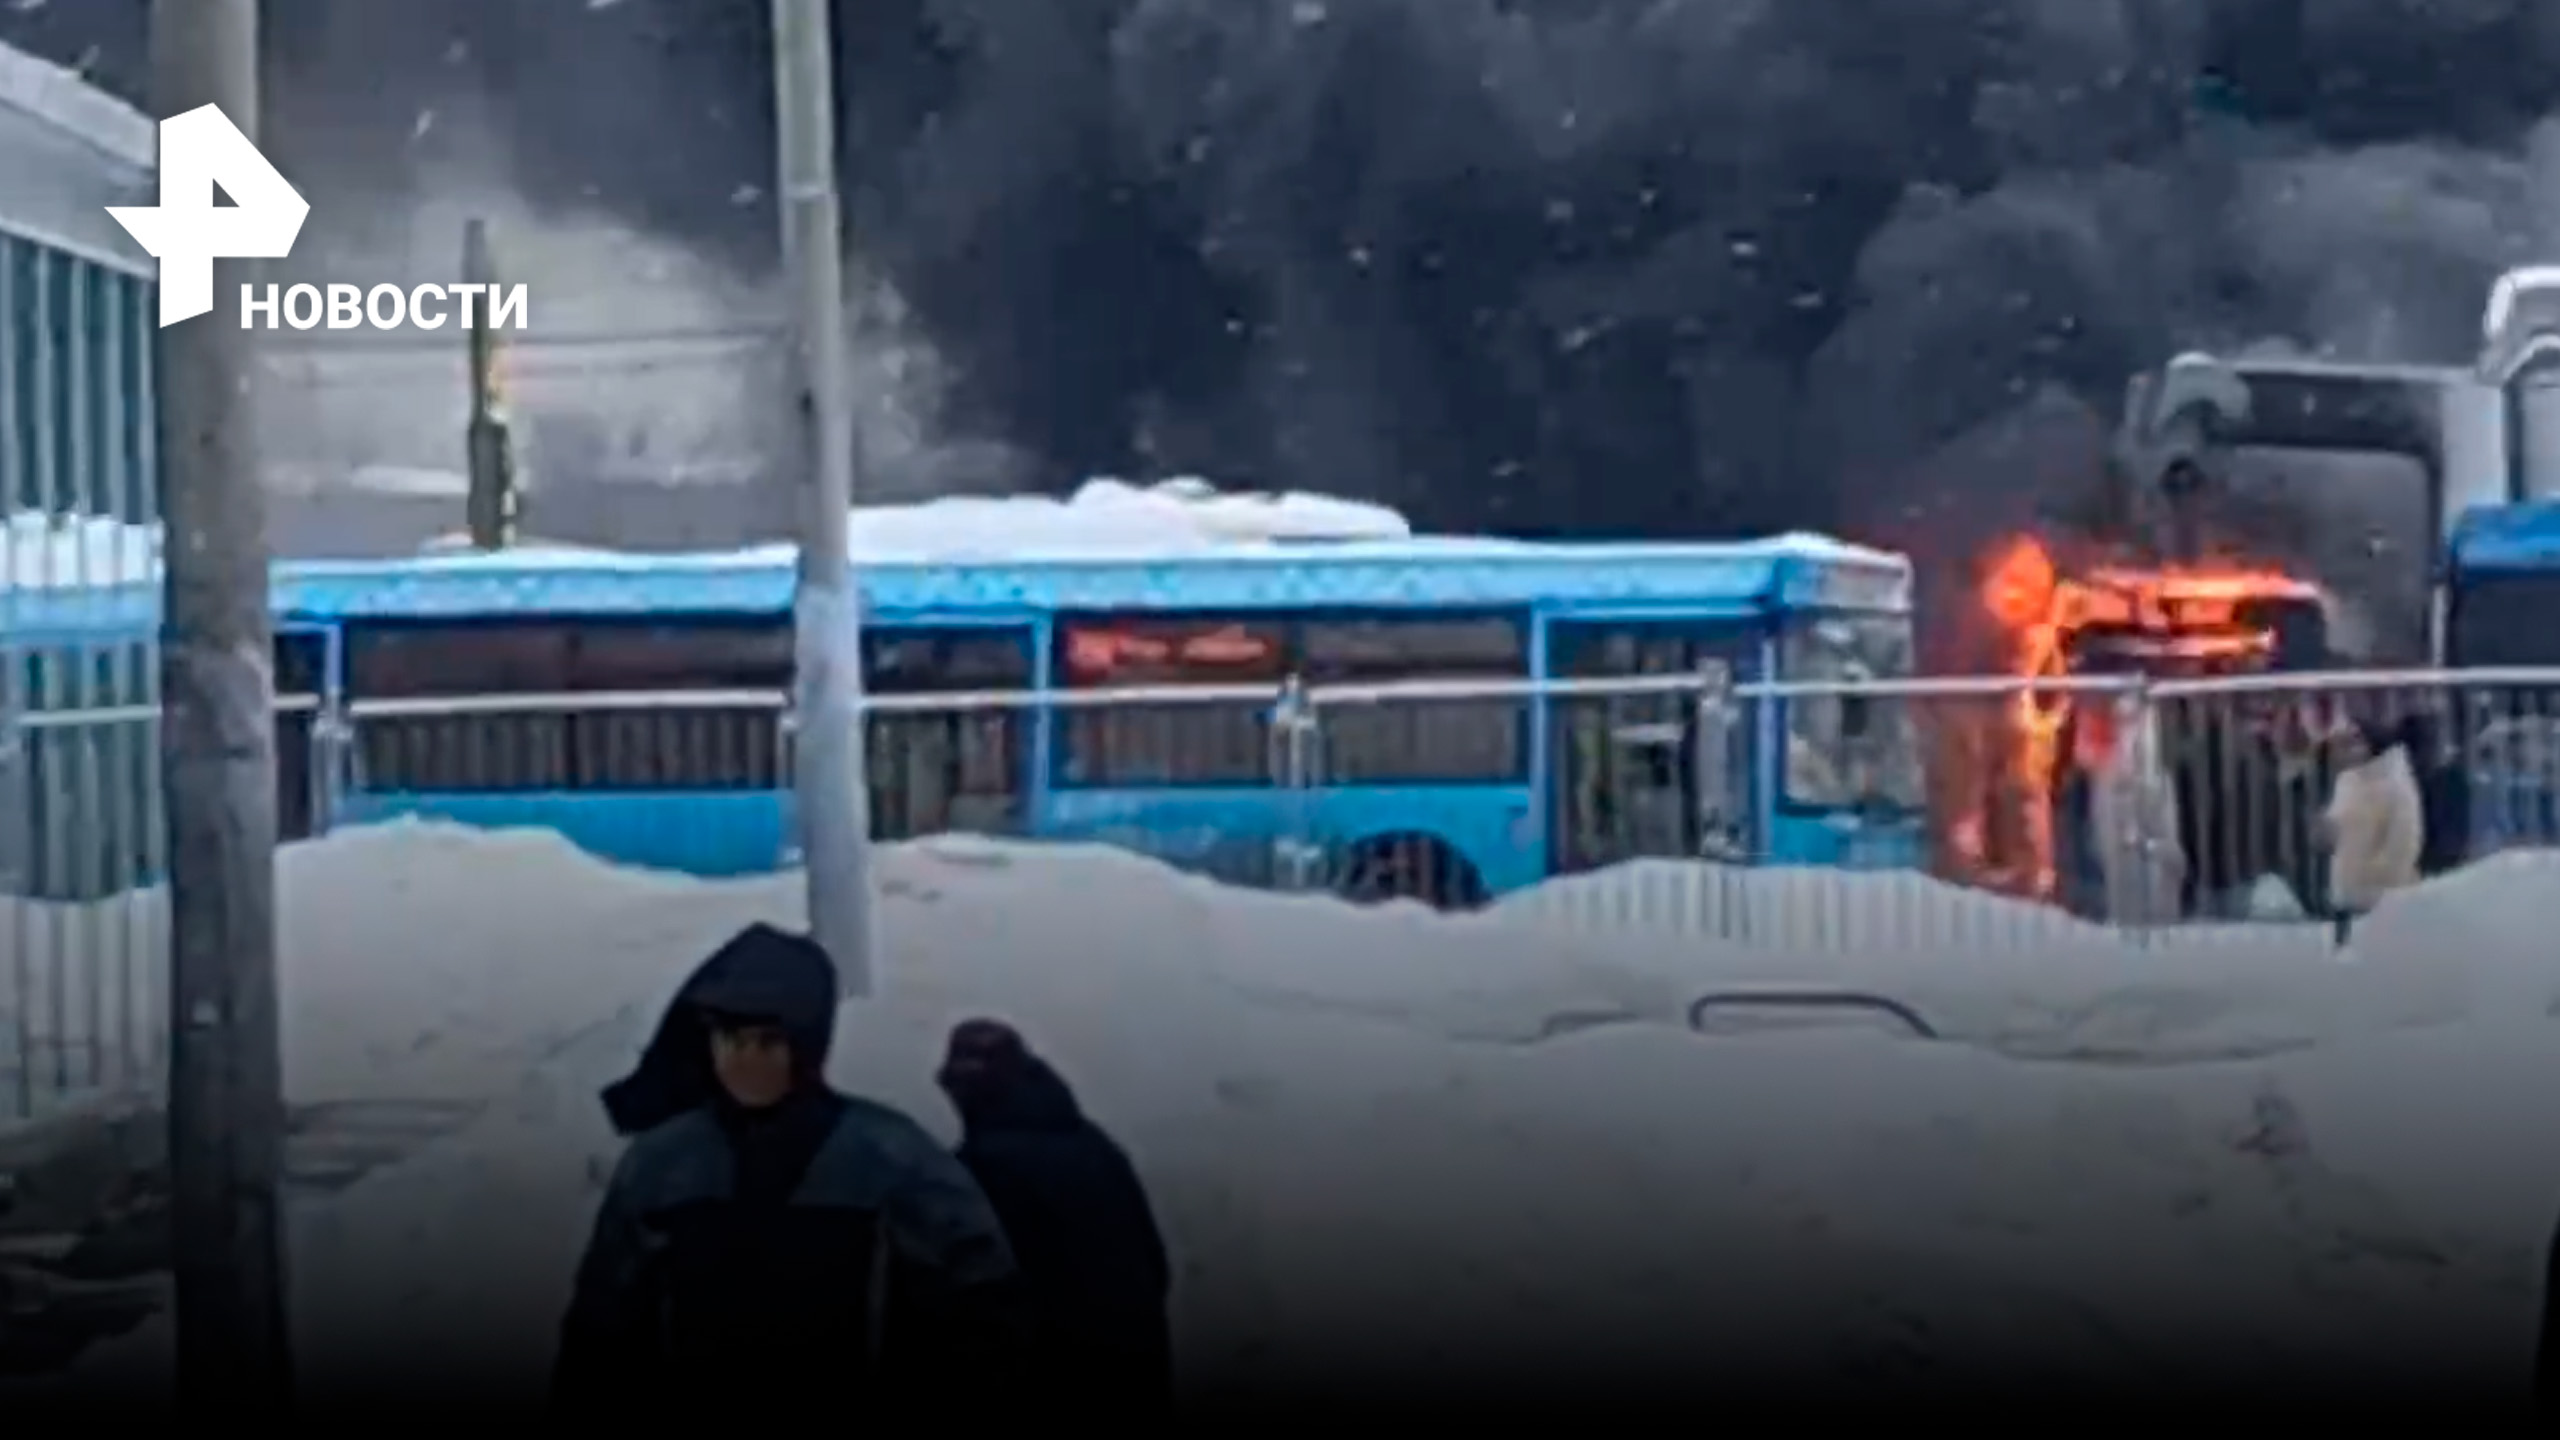 Электробус загорелся в Москве у станции "Бибирево". Пассажиров в этот момент внутри не было / РЕН